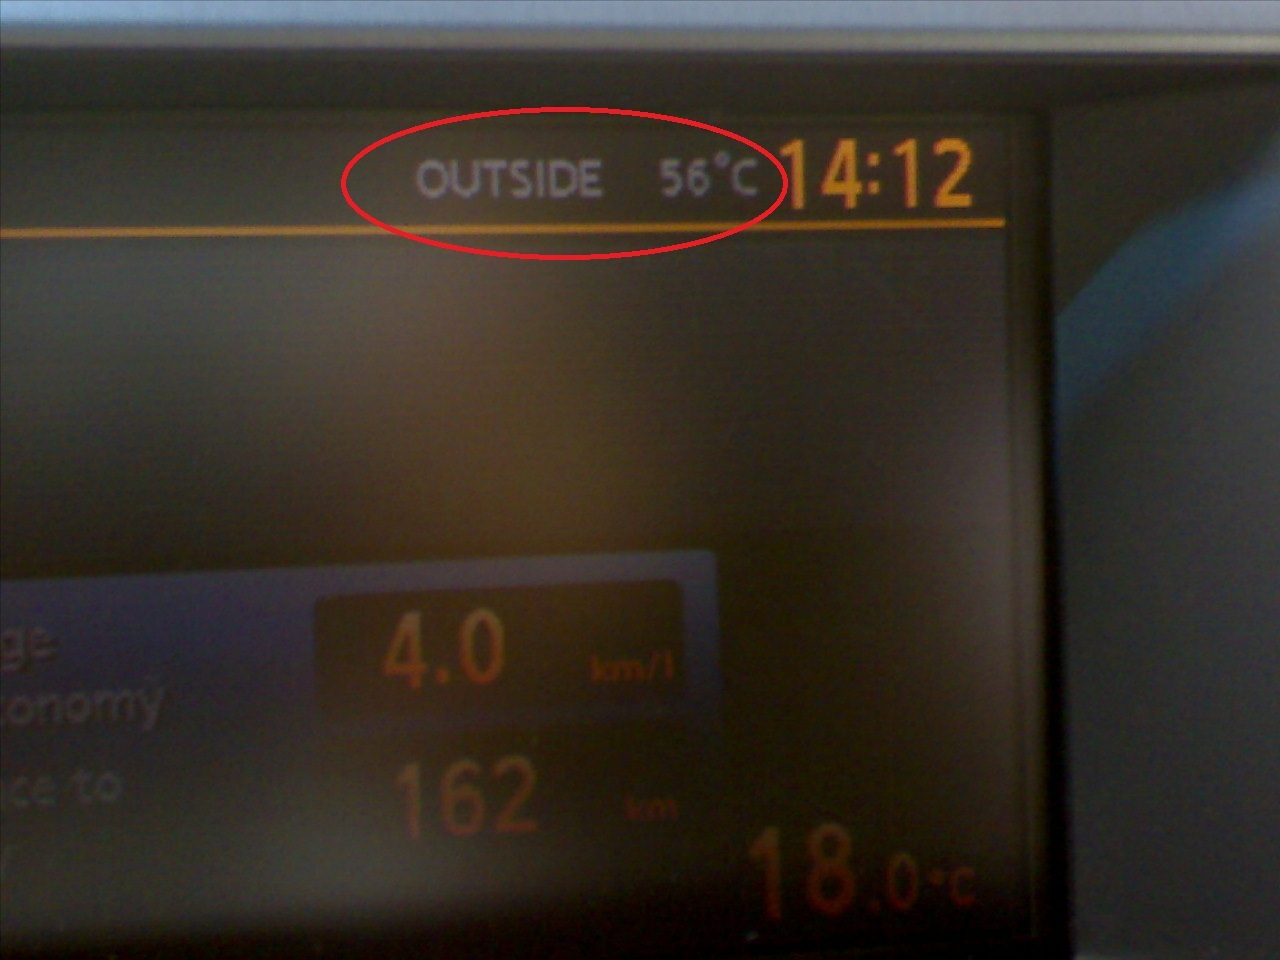 Suhu di sensor mobil mencapai 56° C